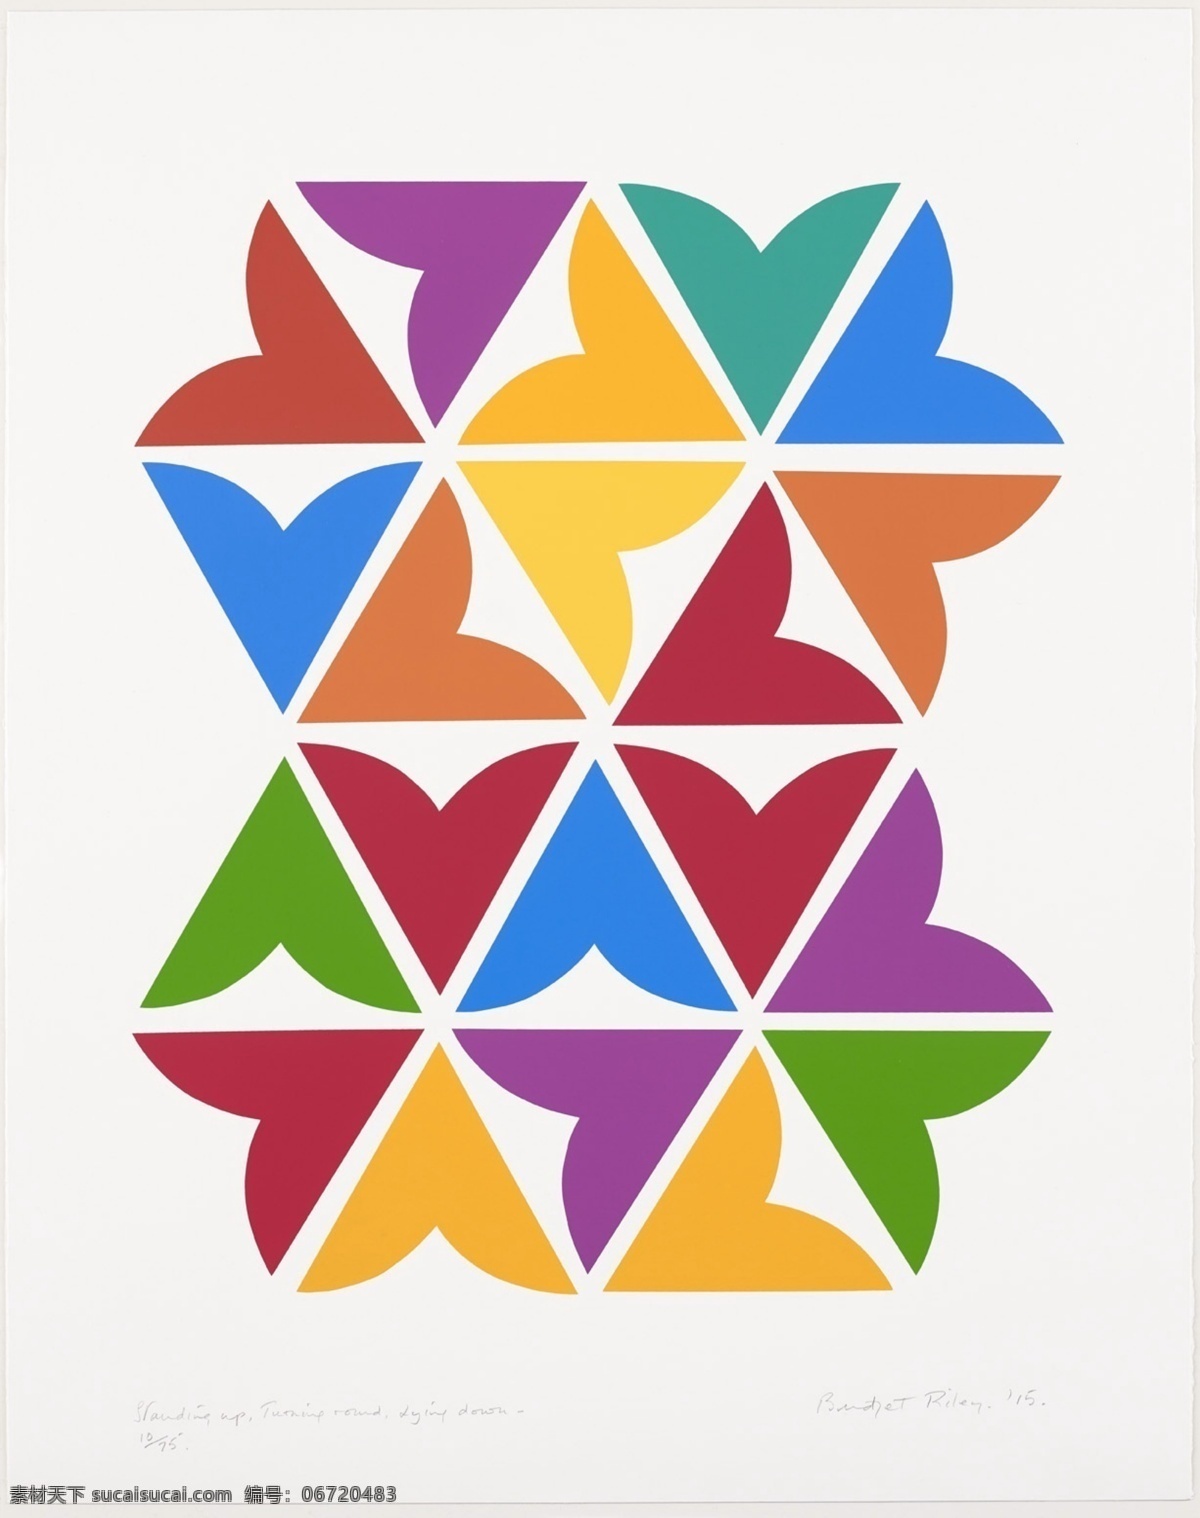 几何 拼接 抽象 绘画 赖利抽象画 抽象油画 装饰画 几何拼接 创意 简约抽象 三角形 方块 文化艺术 绘画书法